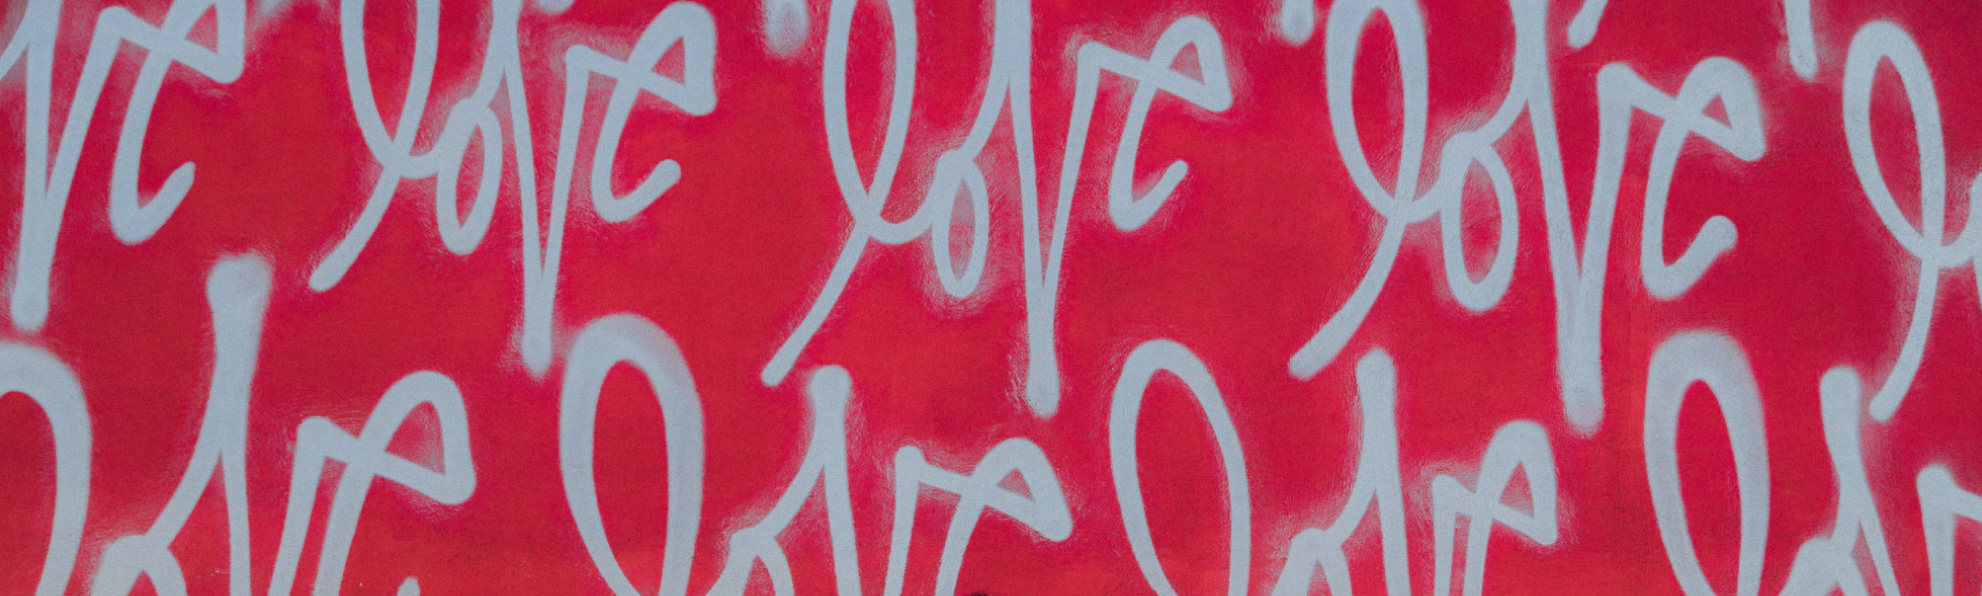 the word love written in graffitti 